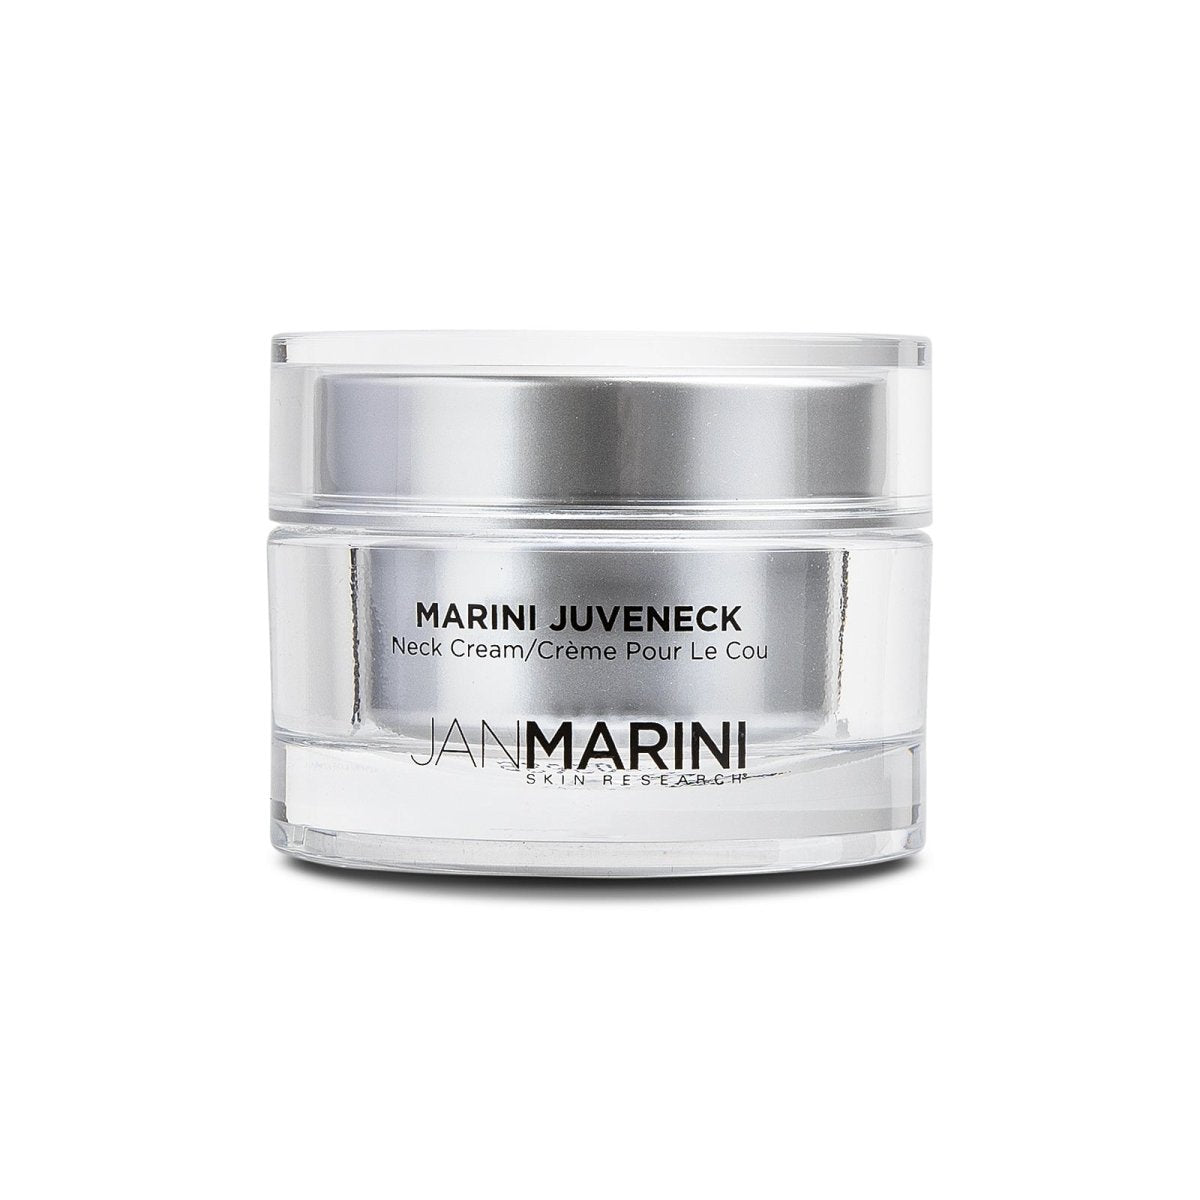 Image of Jan Marini Juveneck Neck Cream